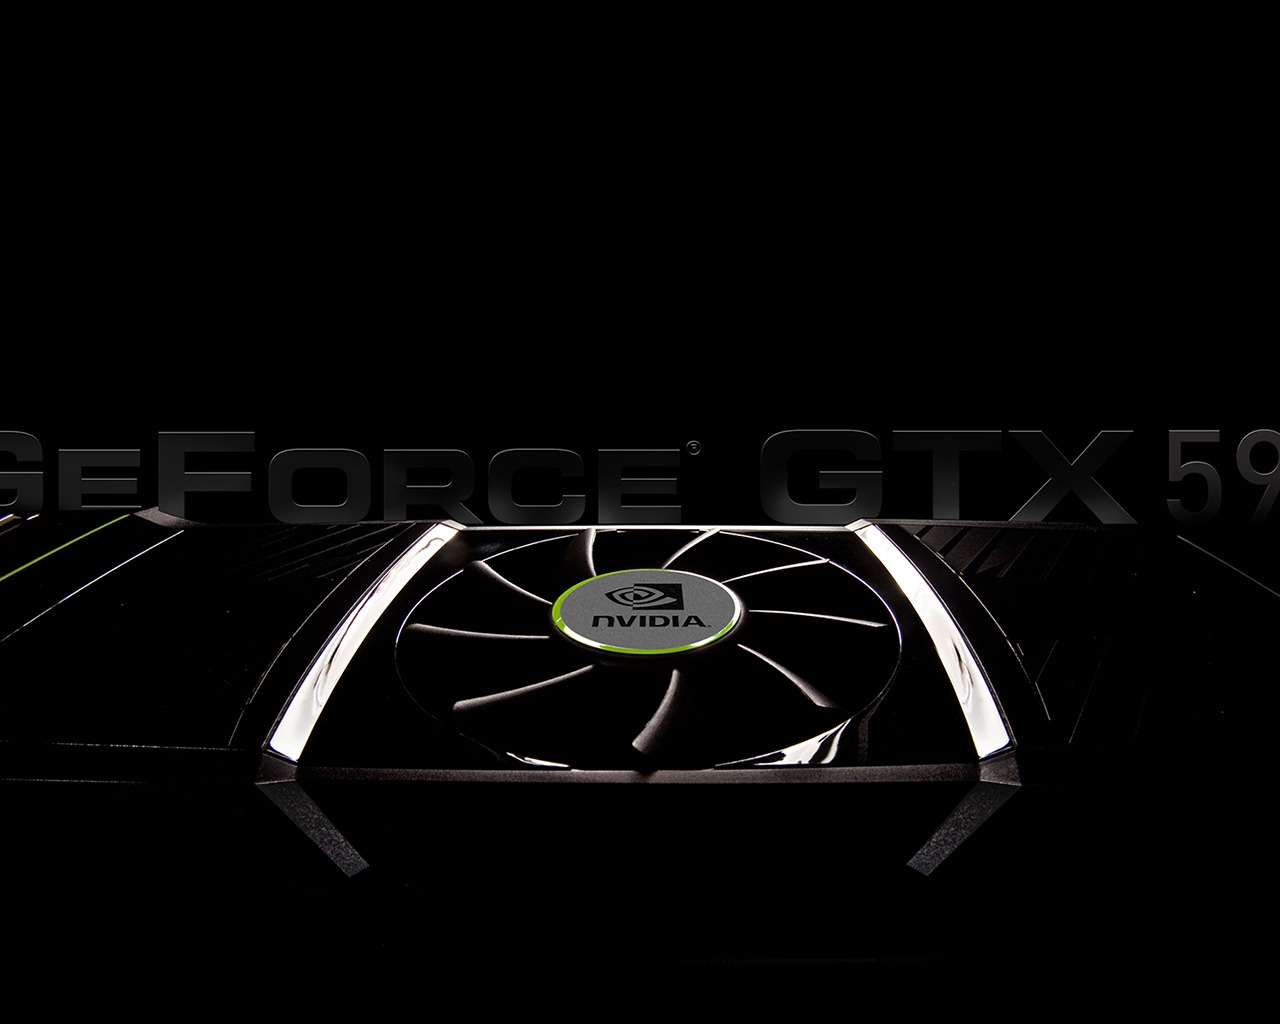 GeForce GTX 590 for 1280 x 1024 resolution